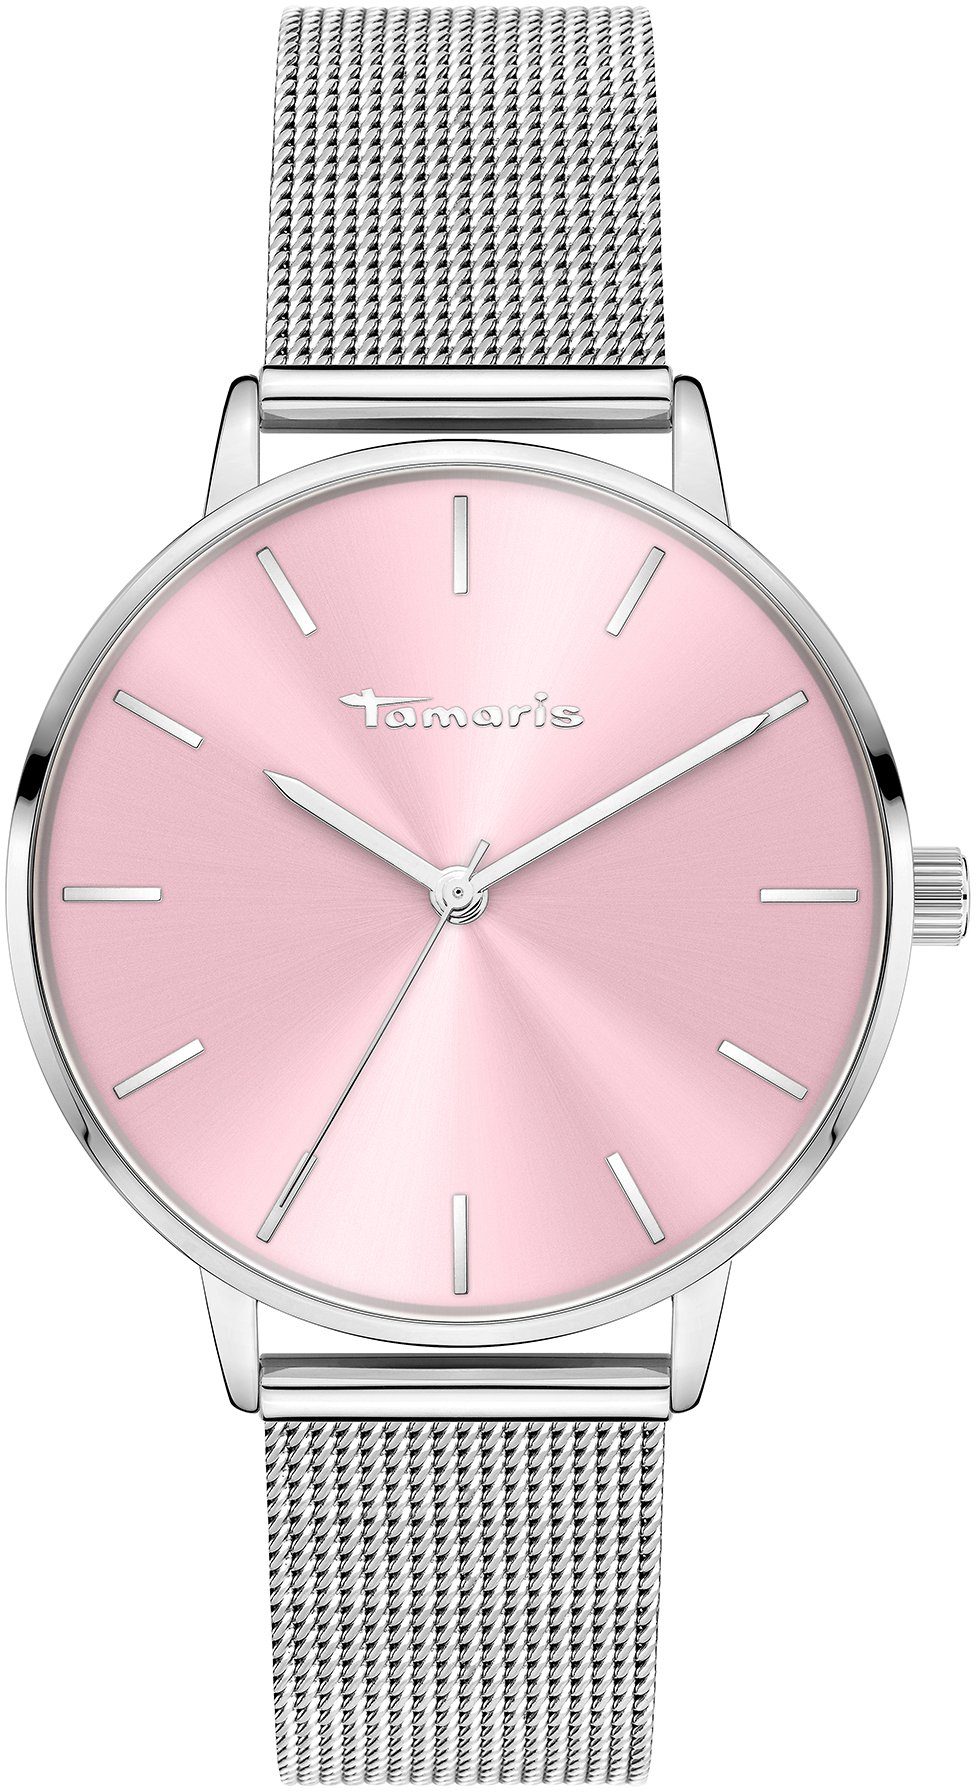 Tamaris Quarzuhr TT-0065-MQ rosa